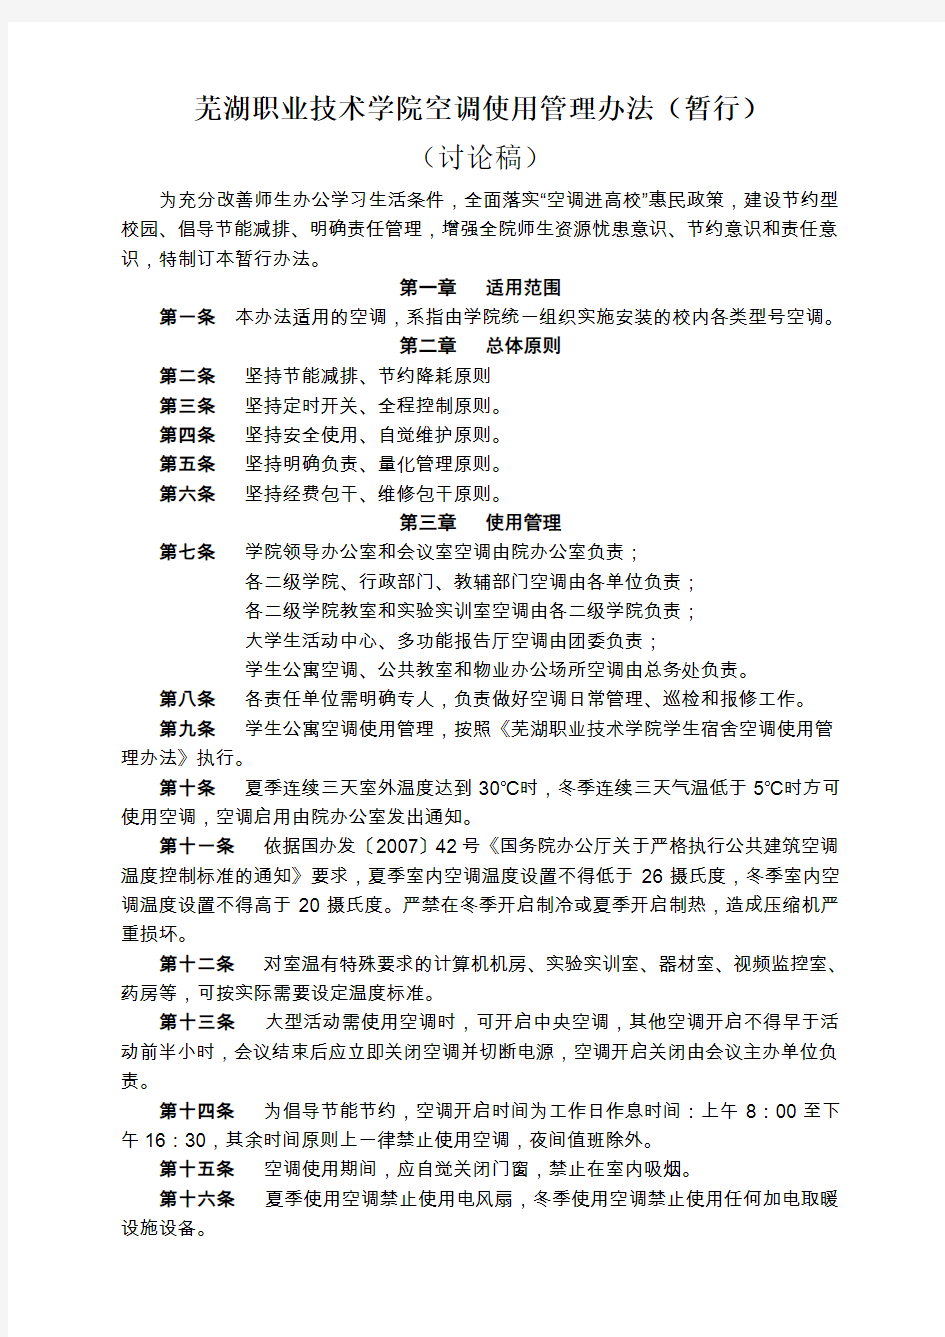 芜湖职业技术学院空调使用管理办法(暂行)